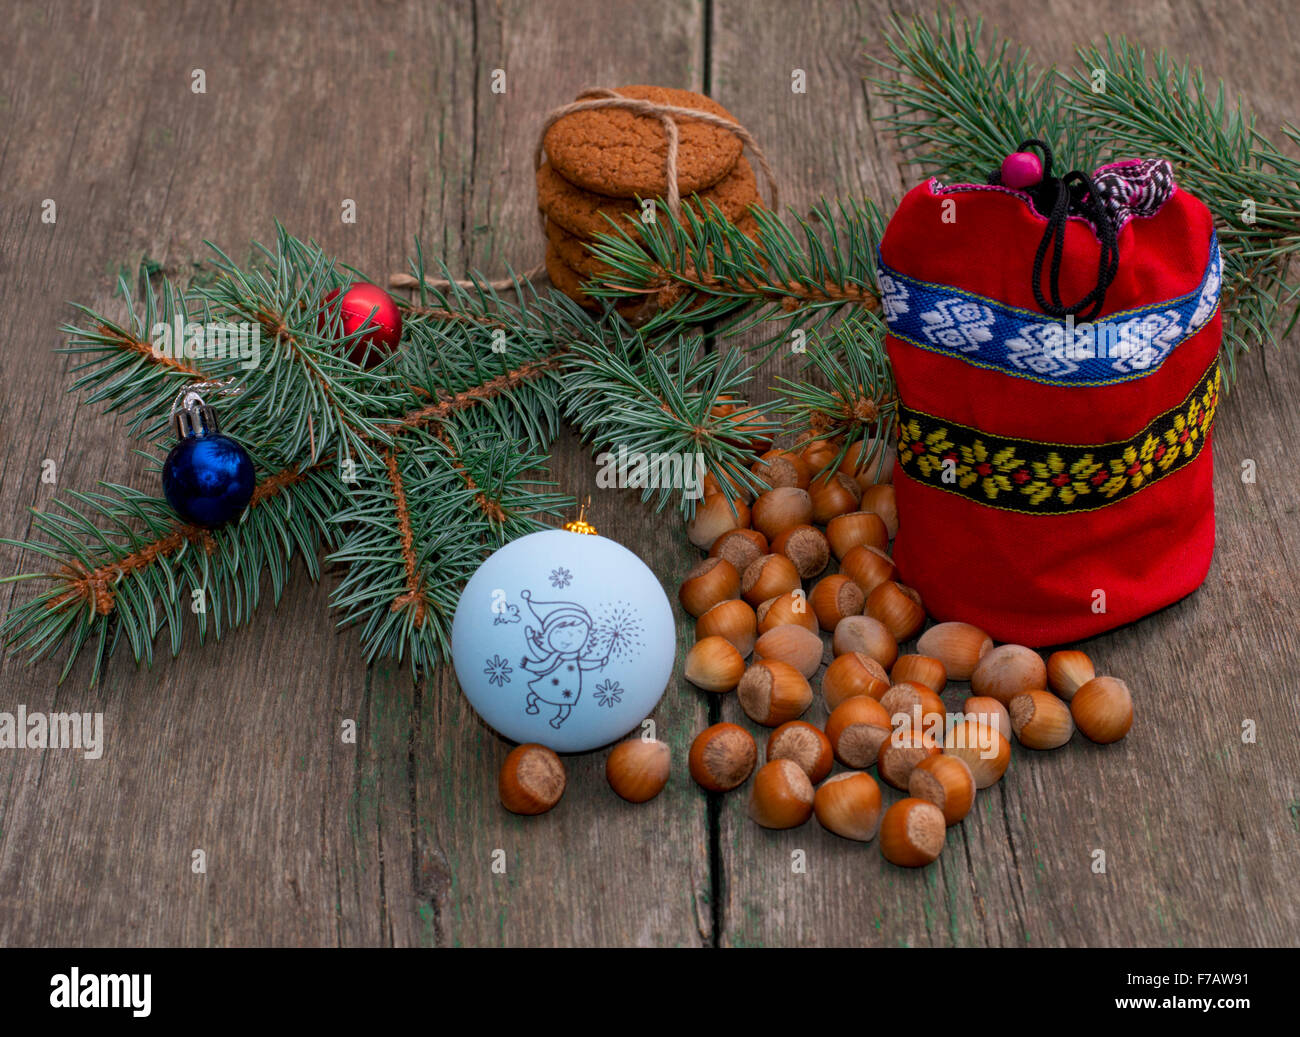 La direction générale de conifères avec des décorations de Noël, un sac cadeau rouge et nucule Banque D'Images